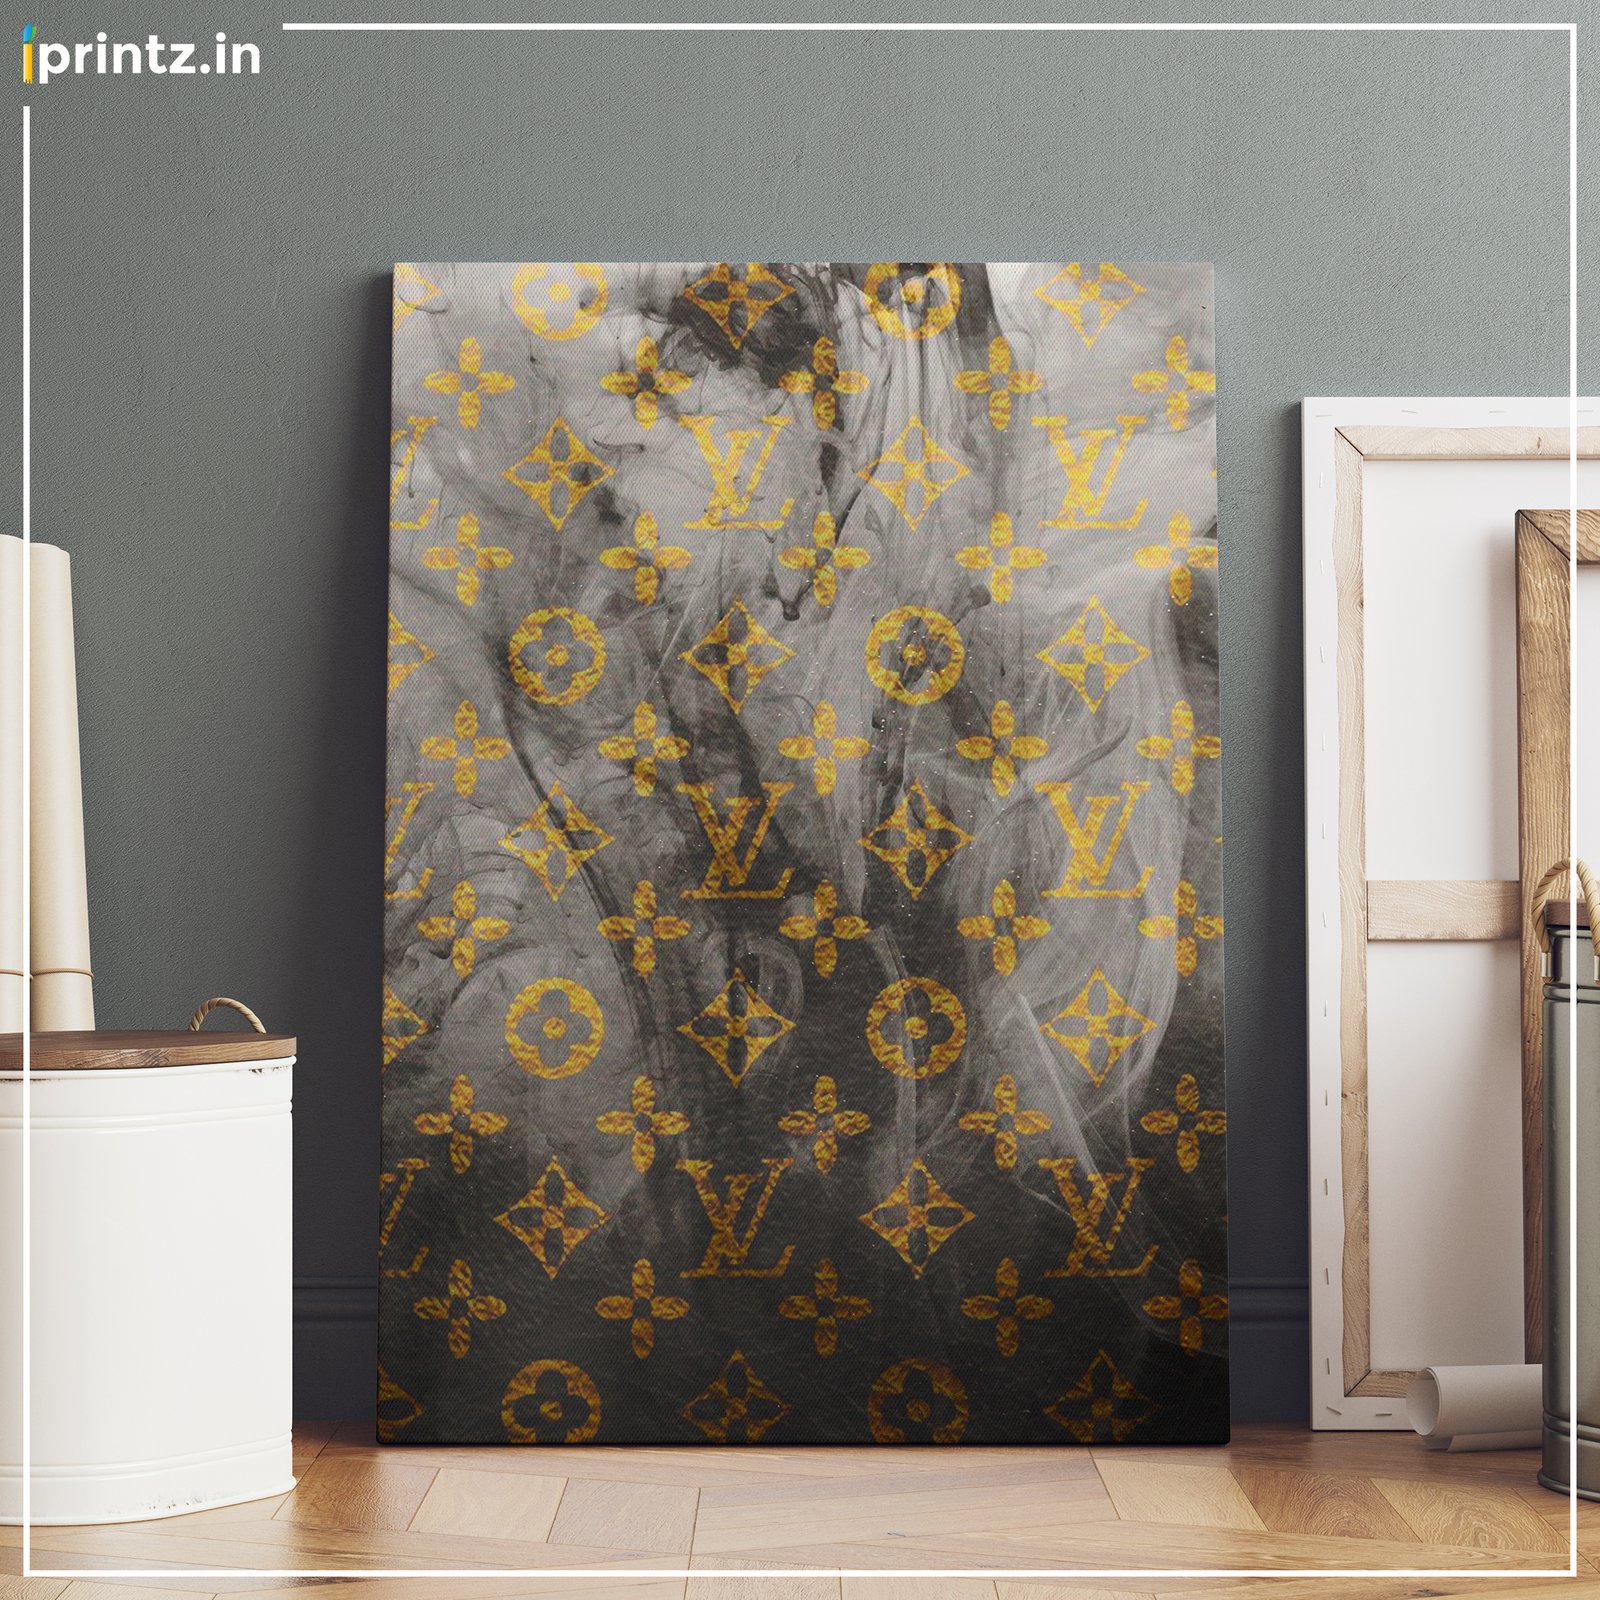 Louis Vuitton Dripping Logo Patter - Canvas Wall Art